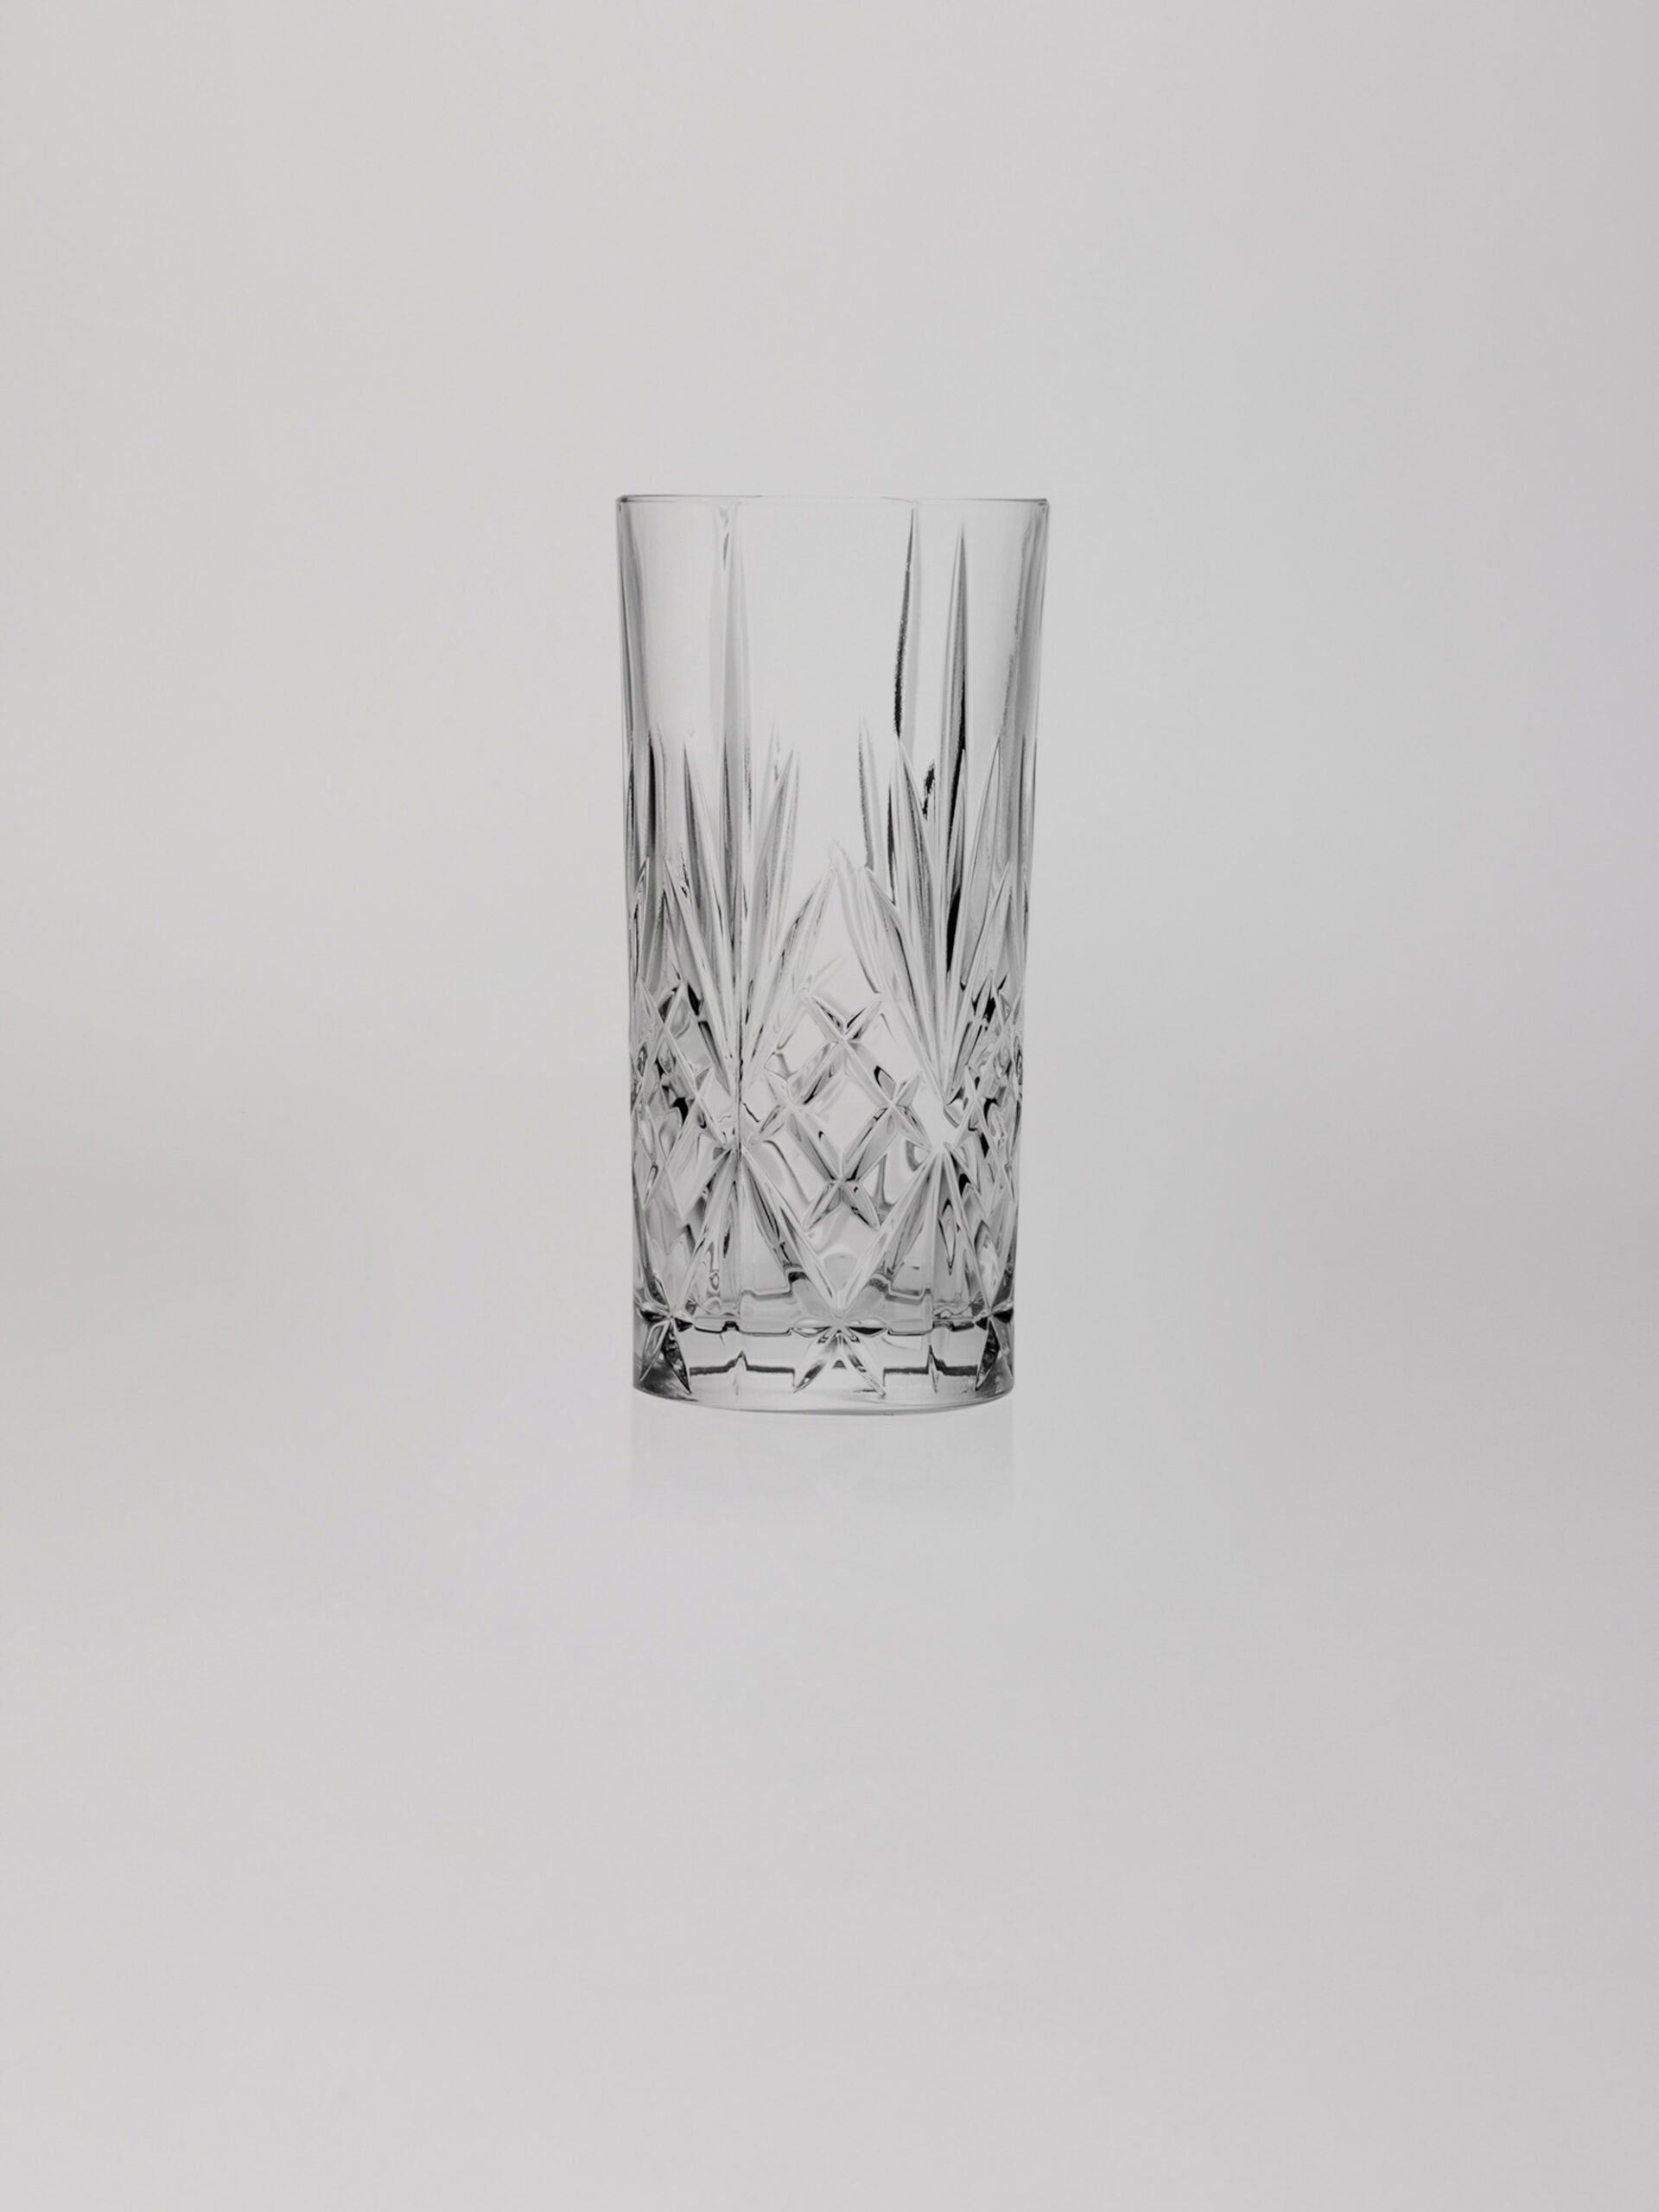 כוס הייבול מזכוכית על רקע אפור בהיר